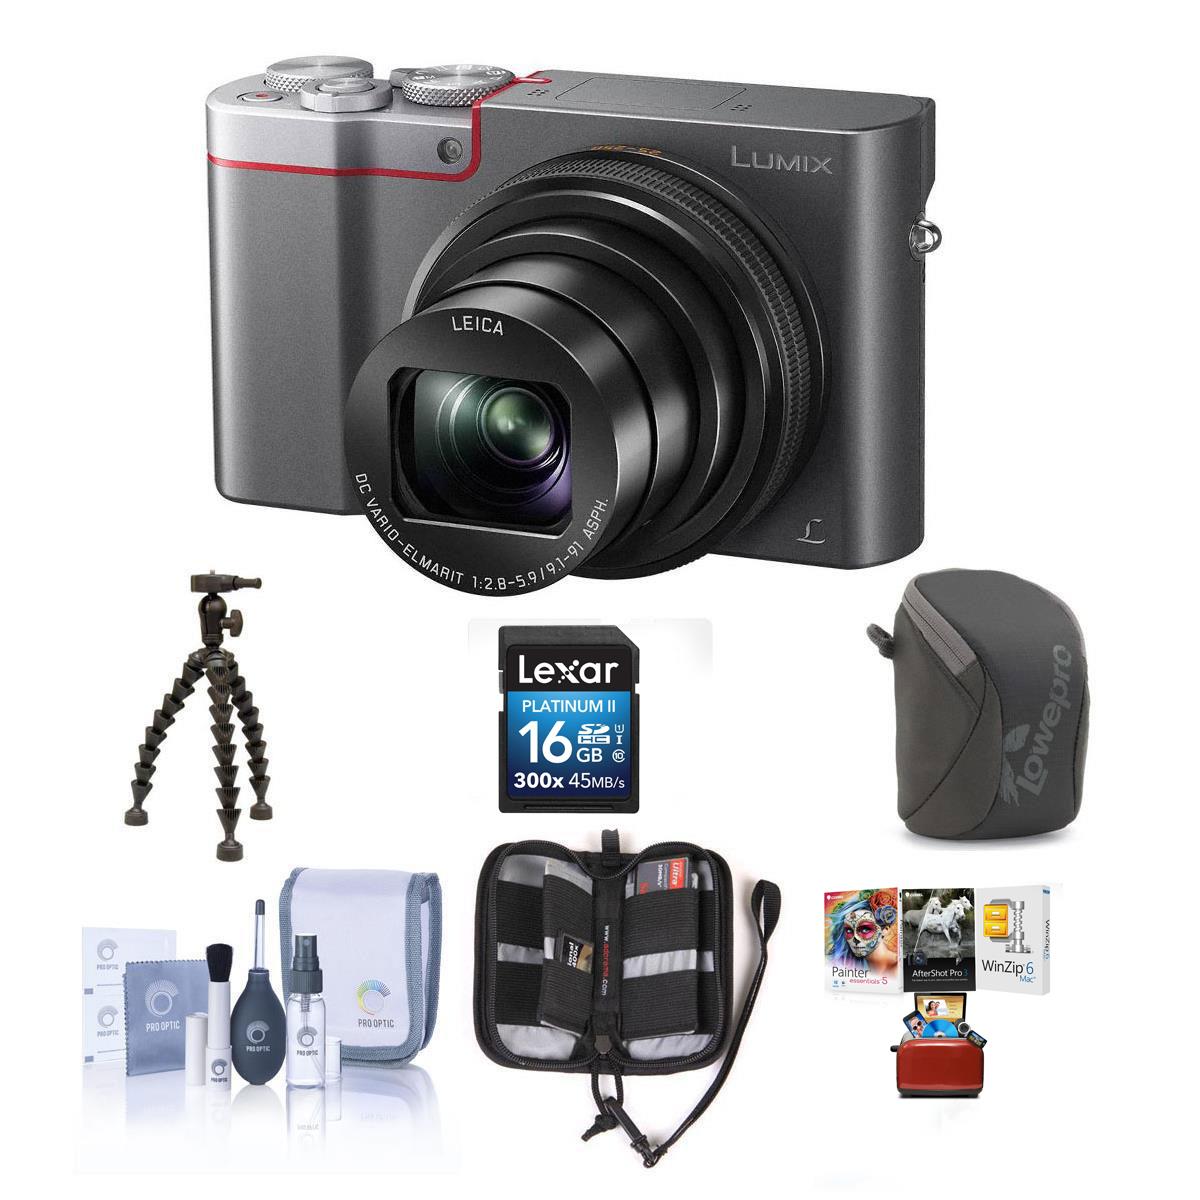 Panasonic Lumix DMC-ZS100 Digital Camera with Free Mac Accessory Bundle, Silver